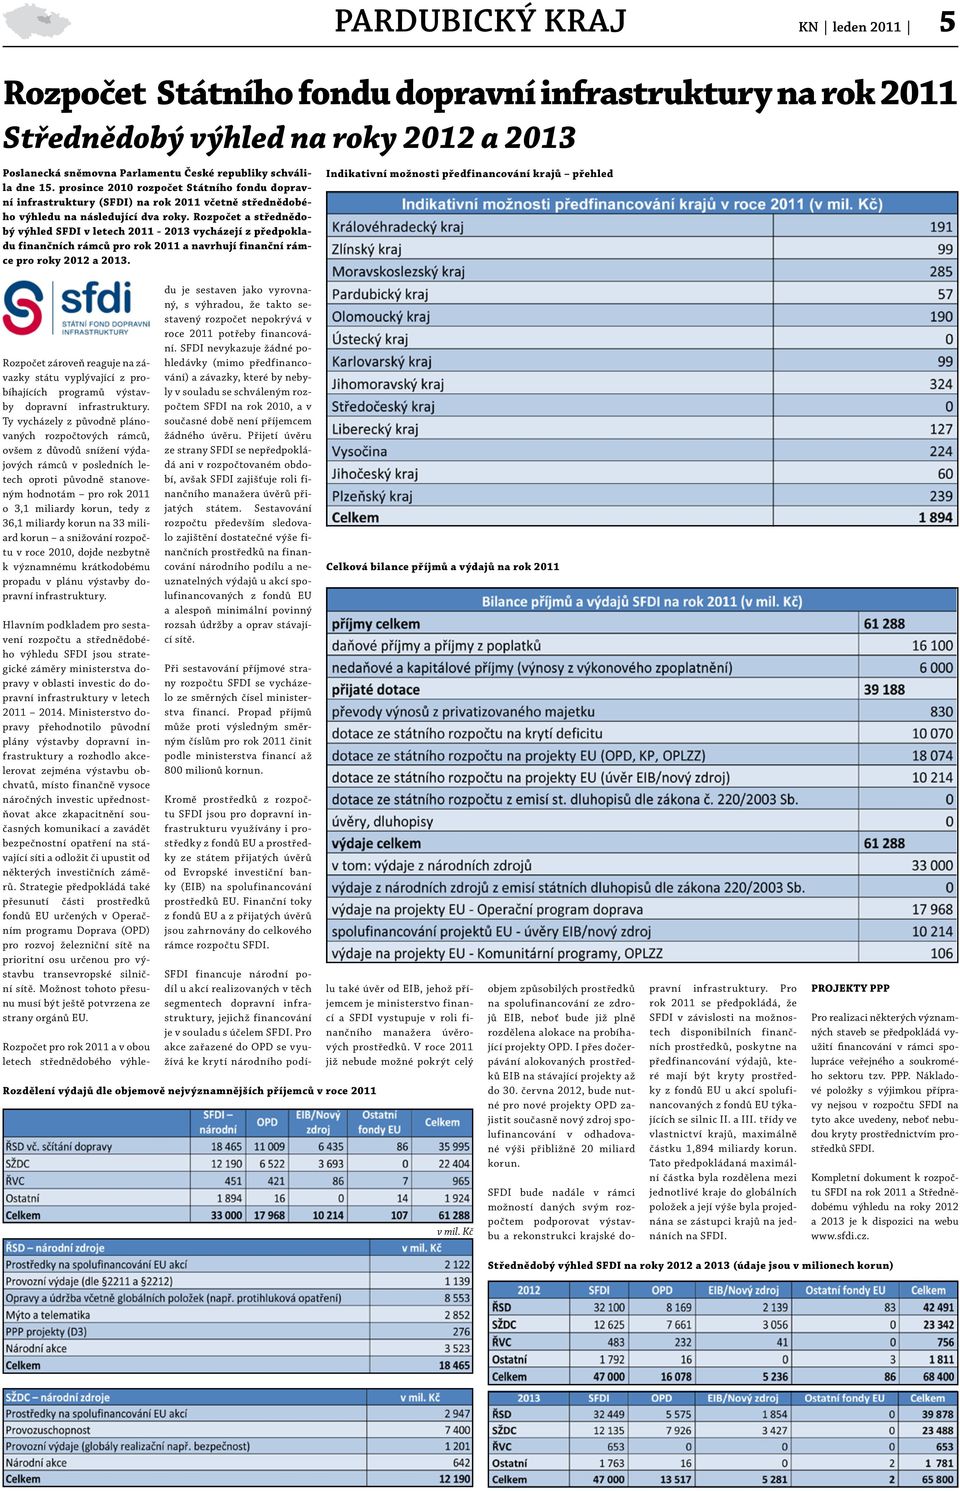 Rozpočet a střednědobý výhled SFDI v letech 2011-2013 vycházejí z předpokladu finančních rámců pro rok 2011 a navrhují finanční rámce pro roky 2012 a 2013.